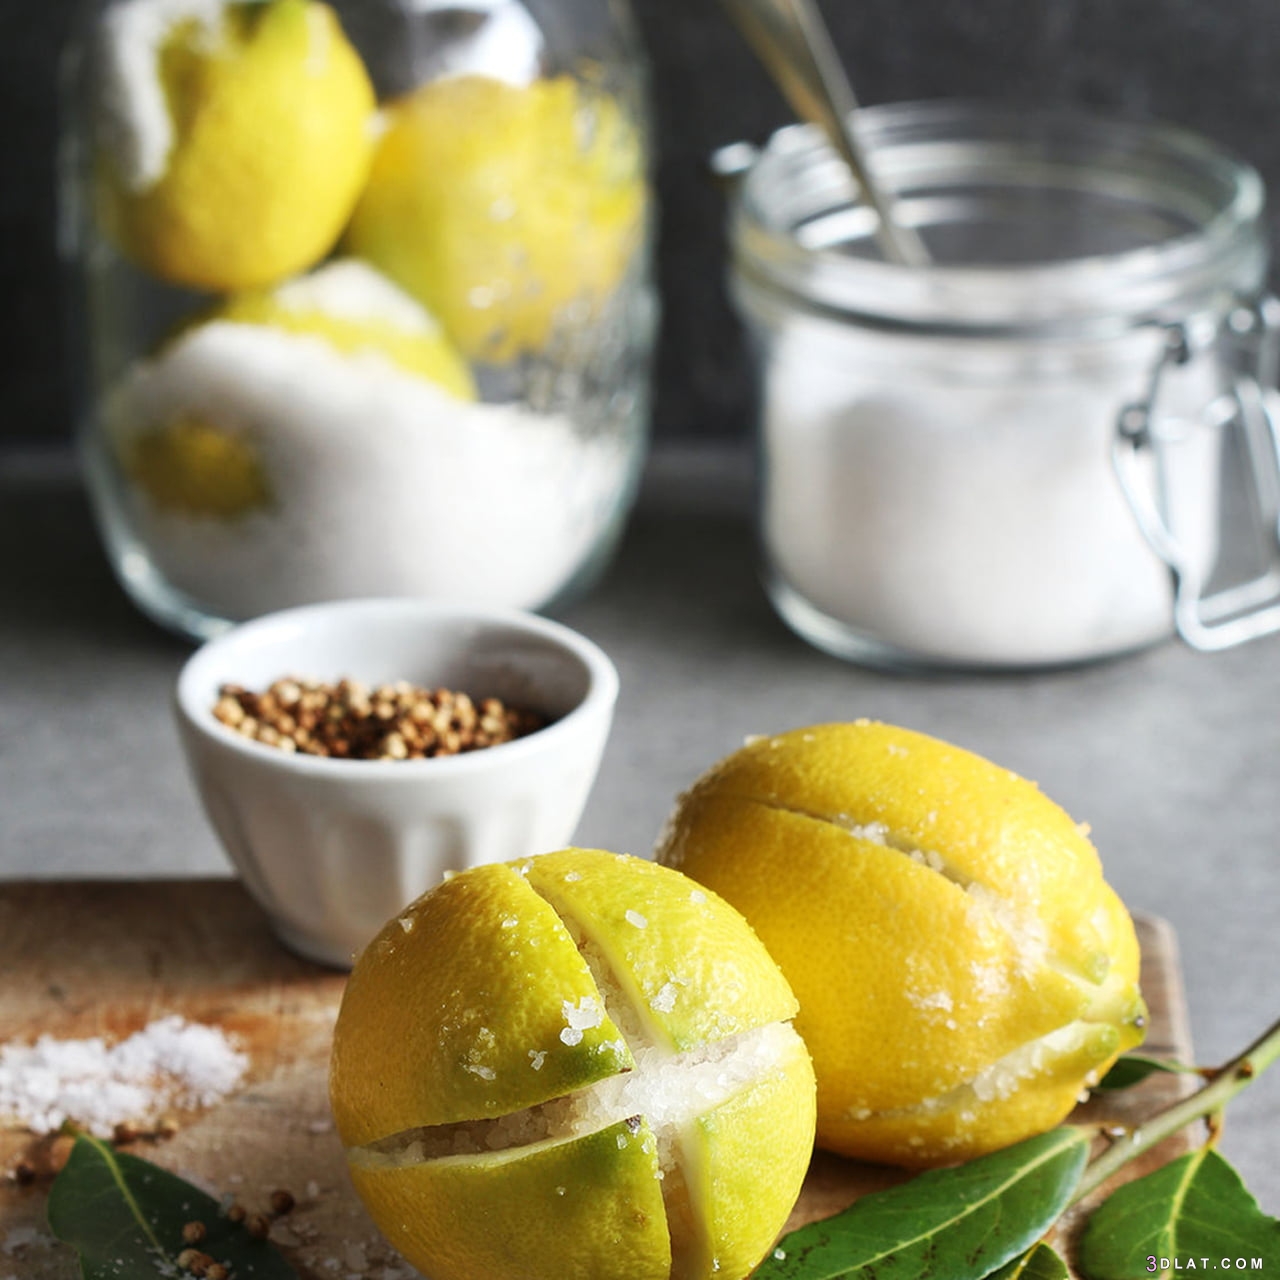 مخلل الليمون ،طريقة مخلل الليمون المعصفر ،عمل الليمون المخلل، تخليل قشر الليمون 3dlat.com_24_19_bc30